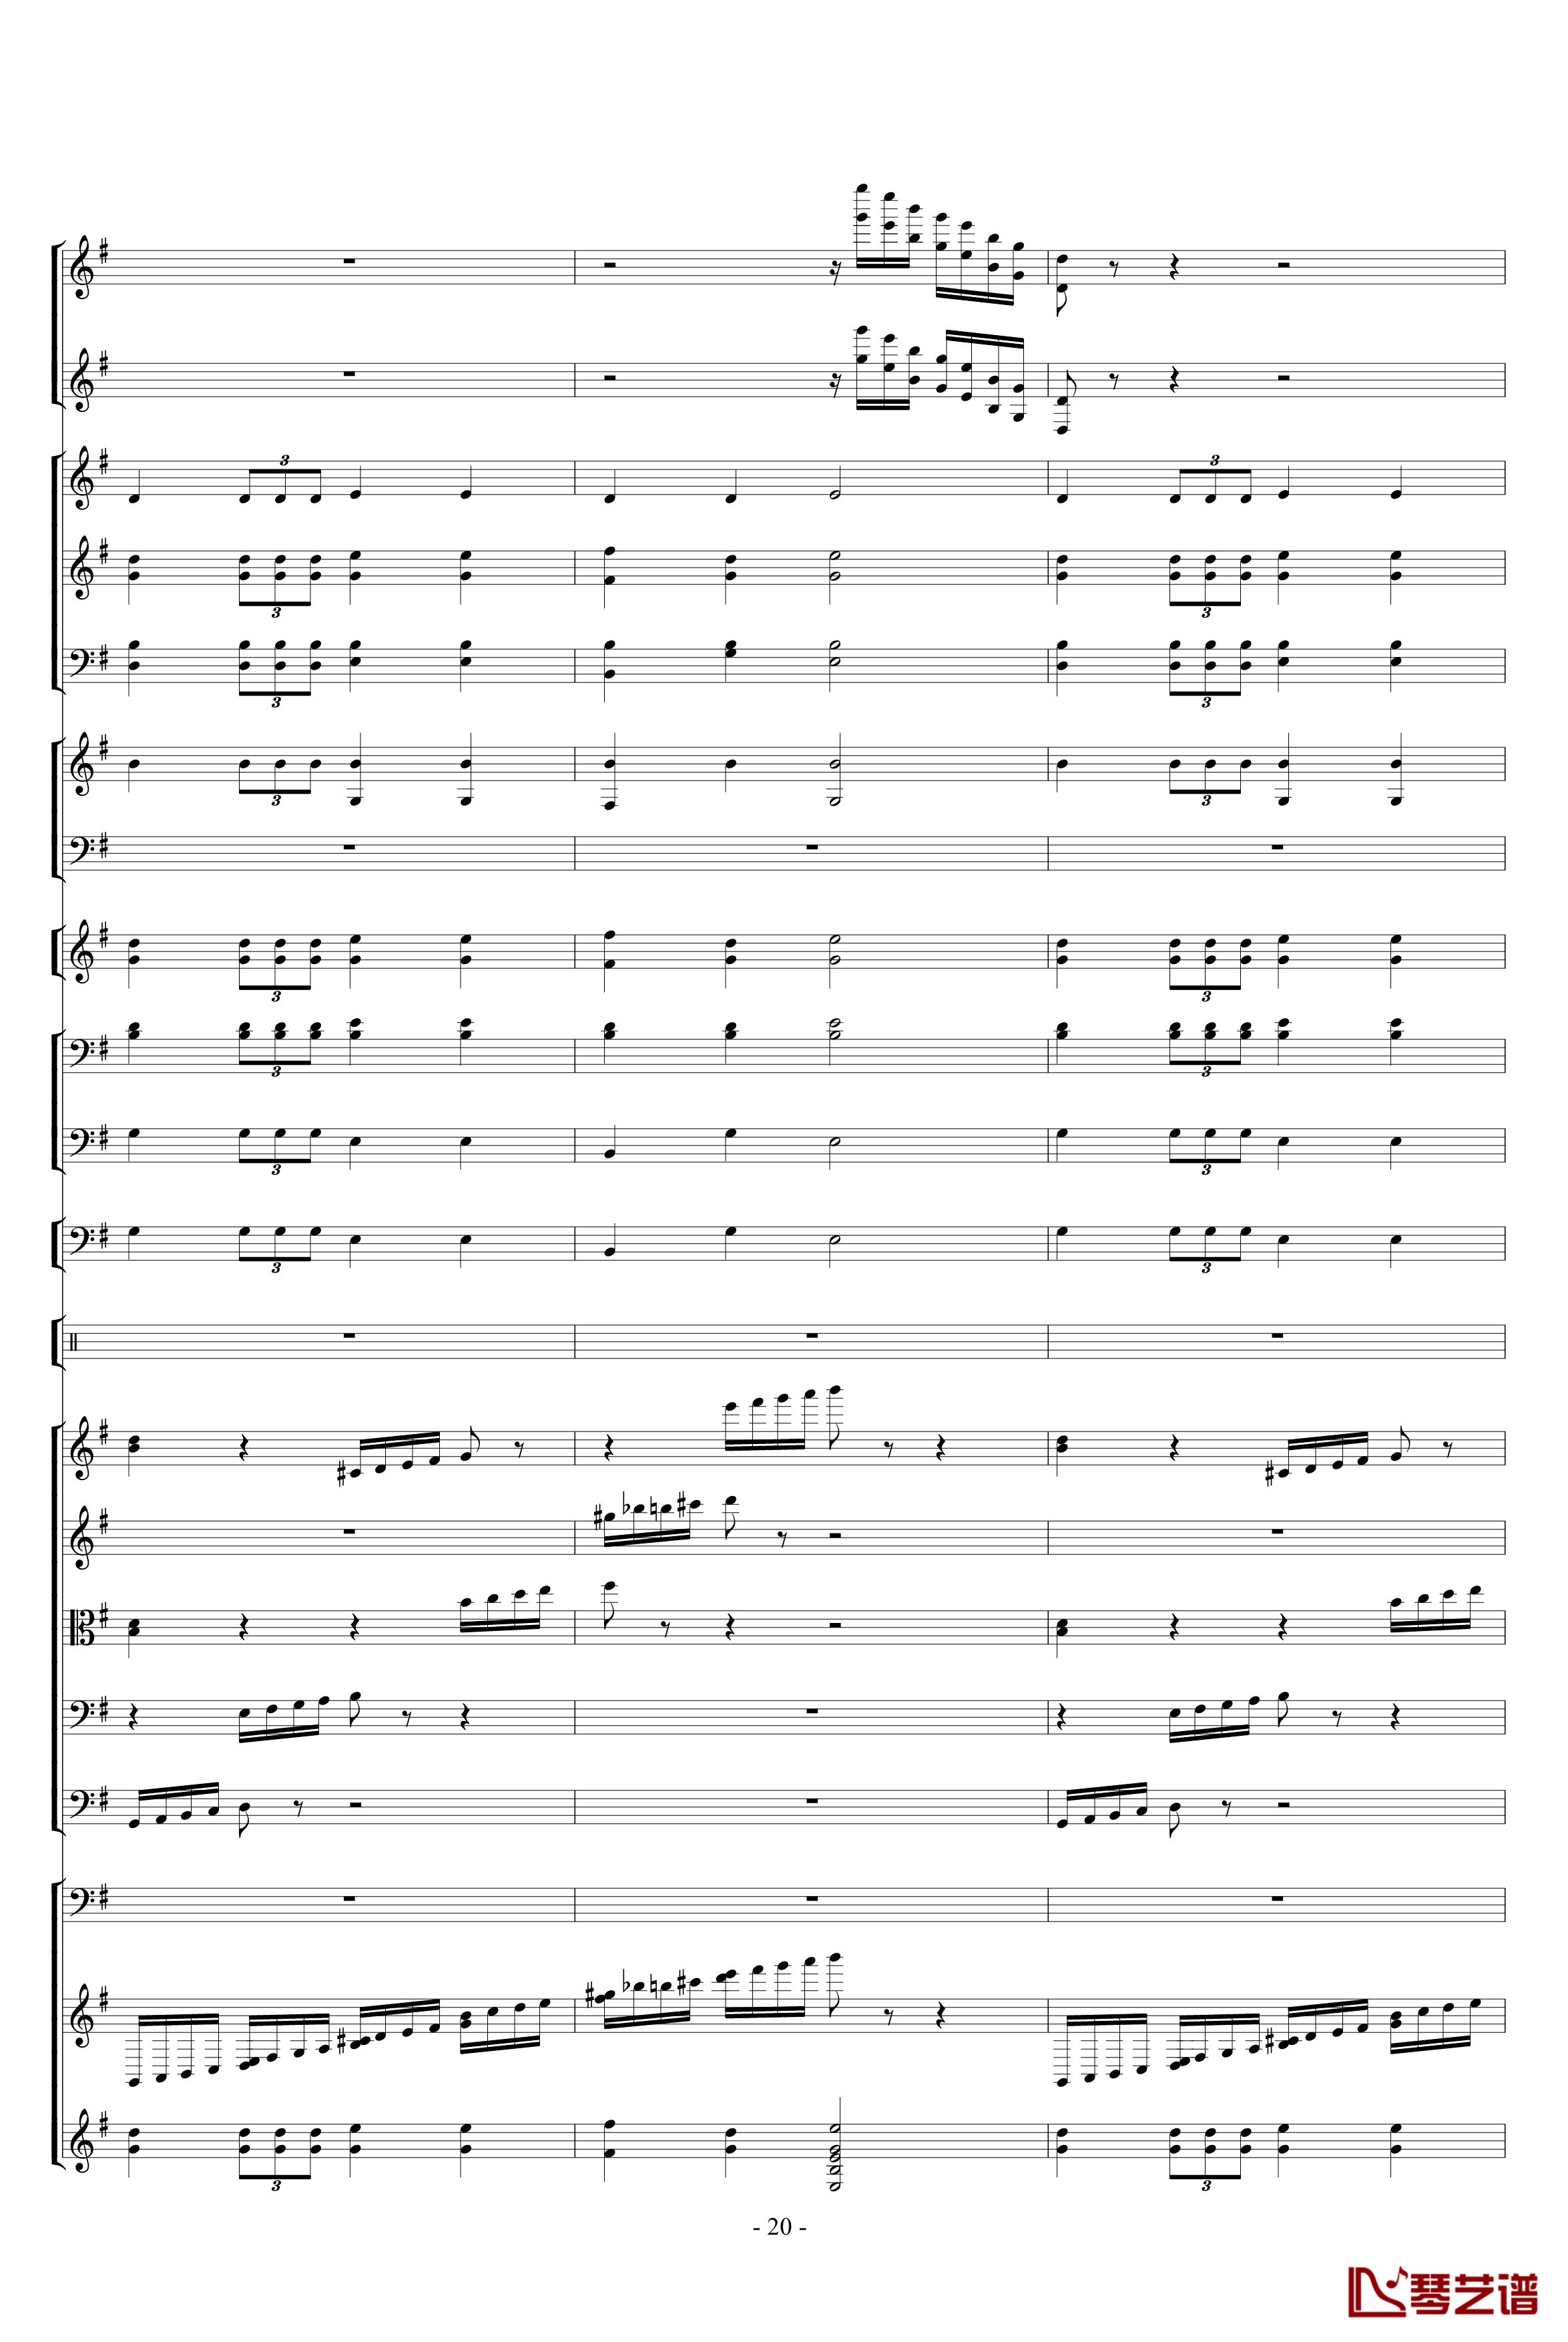 胡桃夹子组曲之进行曲钢琴谱-柴科夫斯基-Peter Ilyich Tchaikovsky20